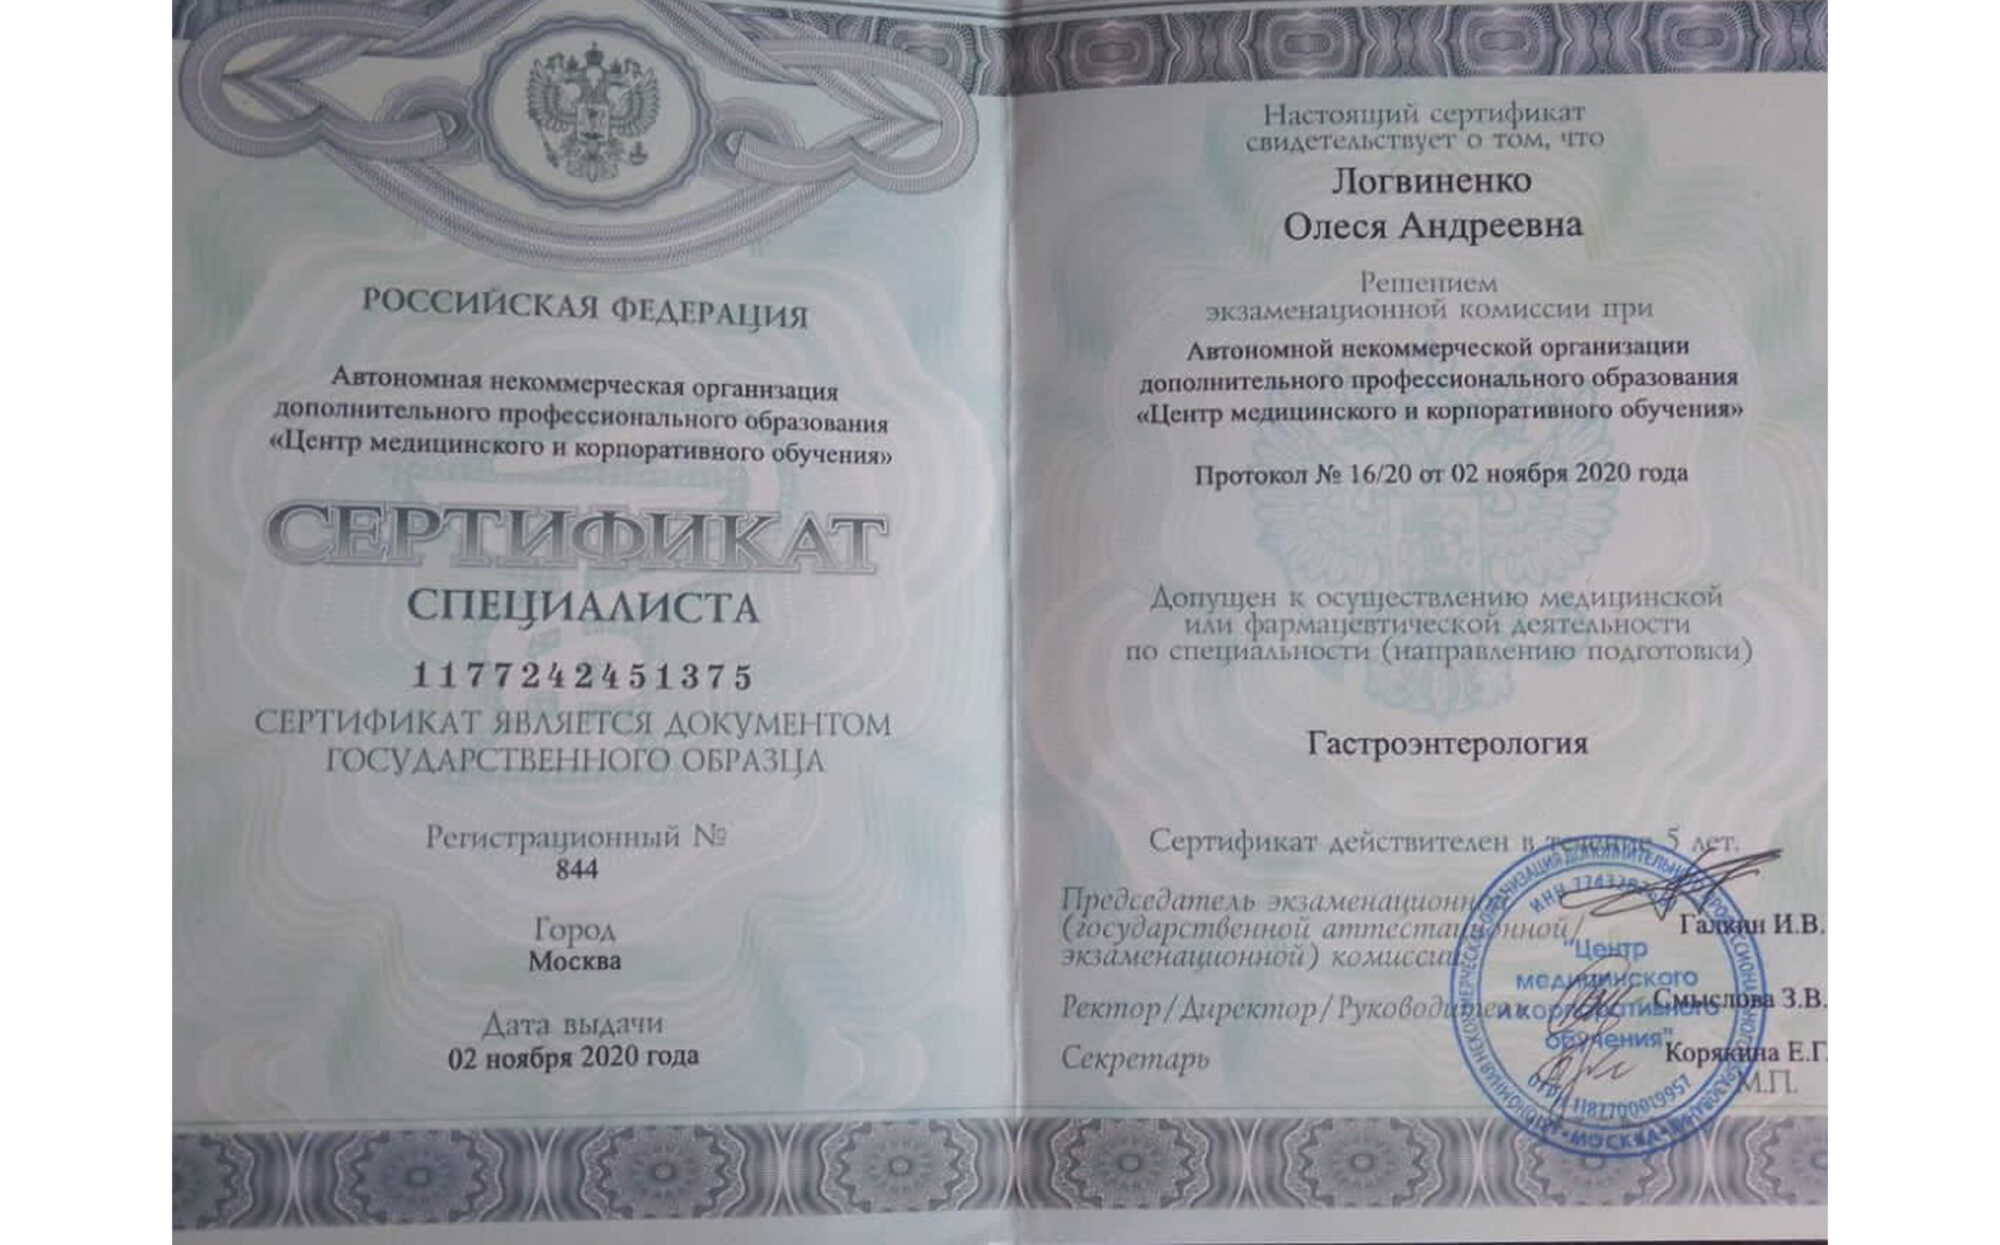 Логвиненко Олеся Андреевна — гастроэнтеролог, терапевт. Сертификат по гастроэнтерологии. 